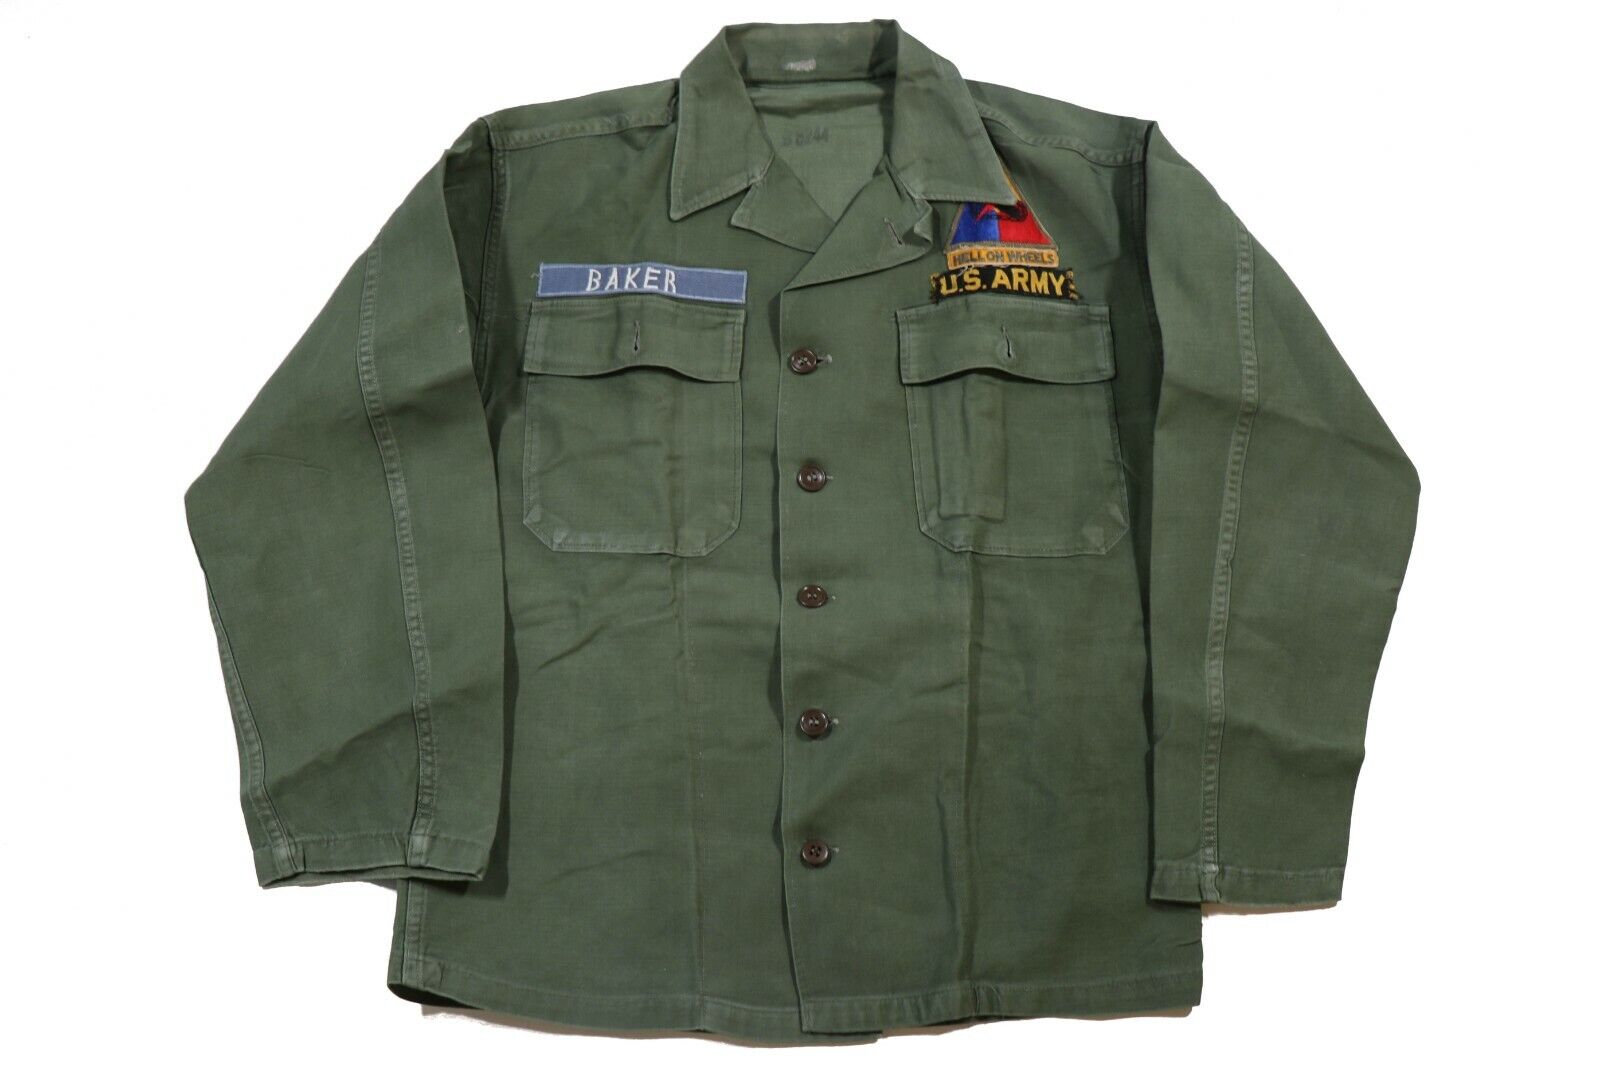 US Vietnam 2nd Armored Division OG-107 Sateen Utility Shirt Jacket Uniform